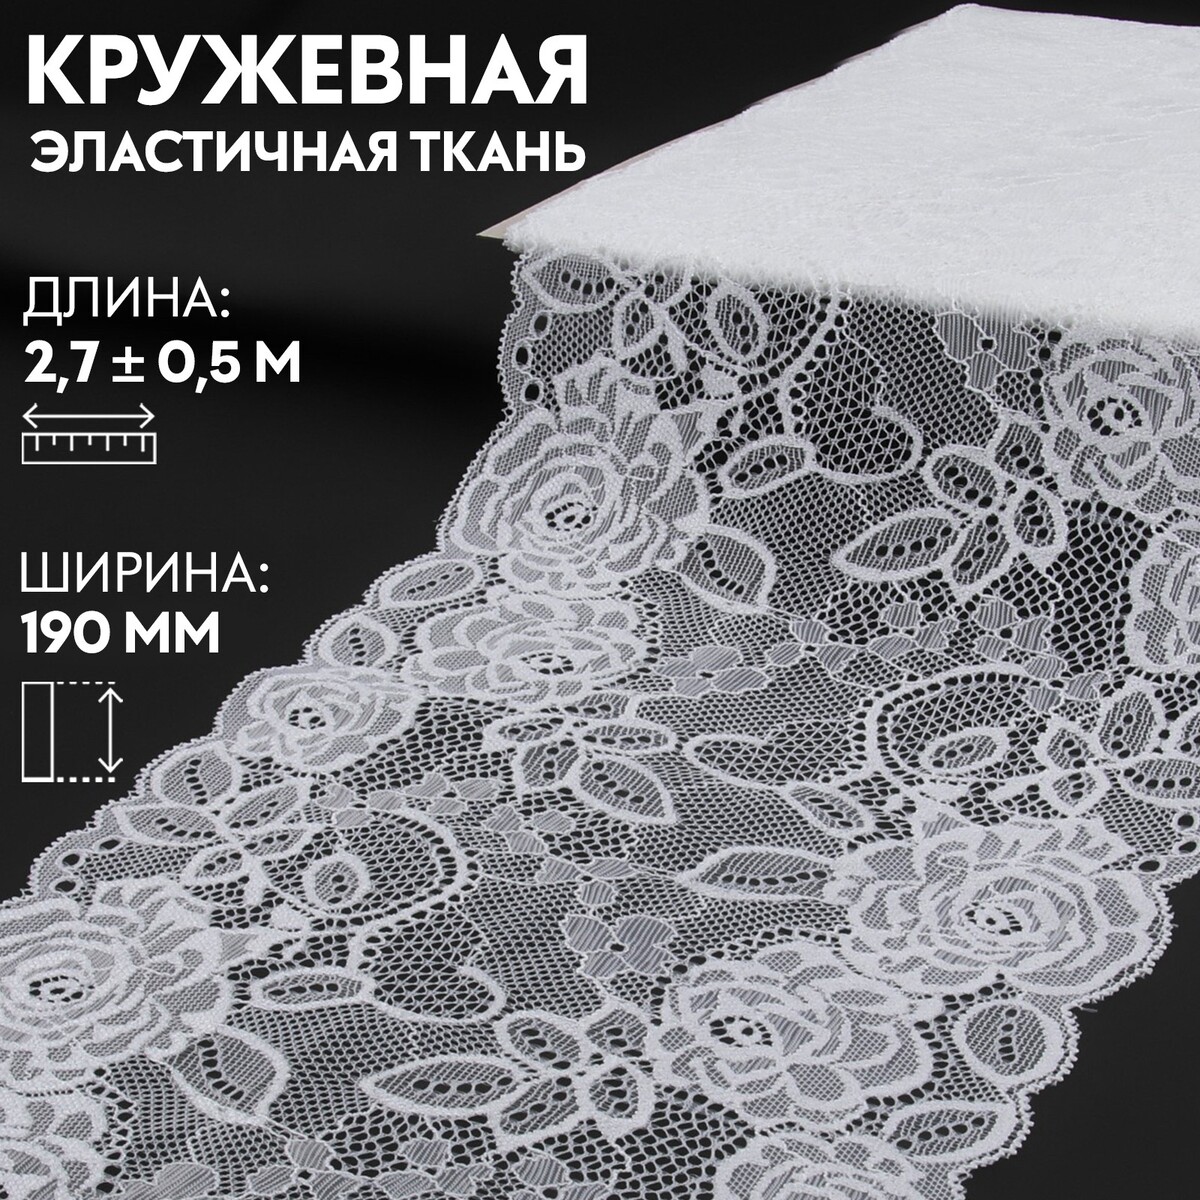 Кружевная эластичная ткань, 190 мм × 2,7 ± 0,5 м, цвет белый кружевная эластичная ткань 190 мм × 2 7 ± 0 5 м белый